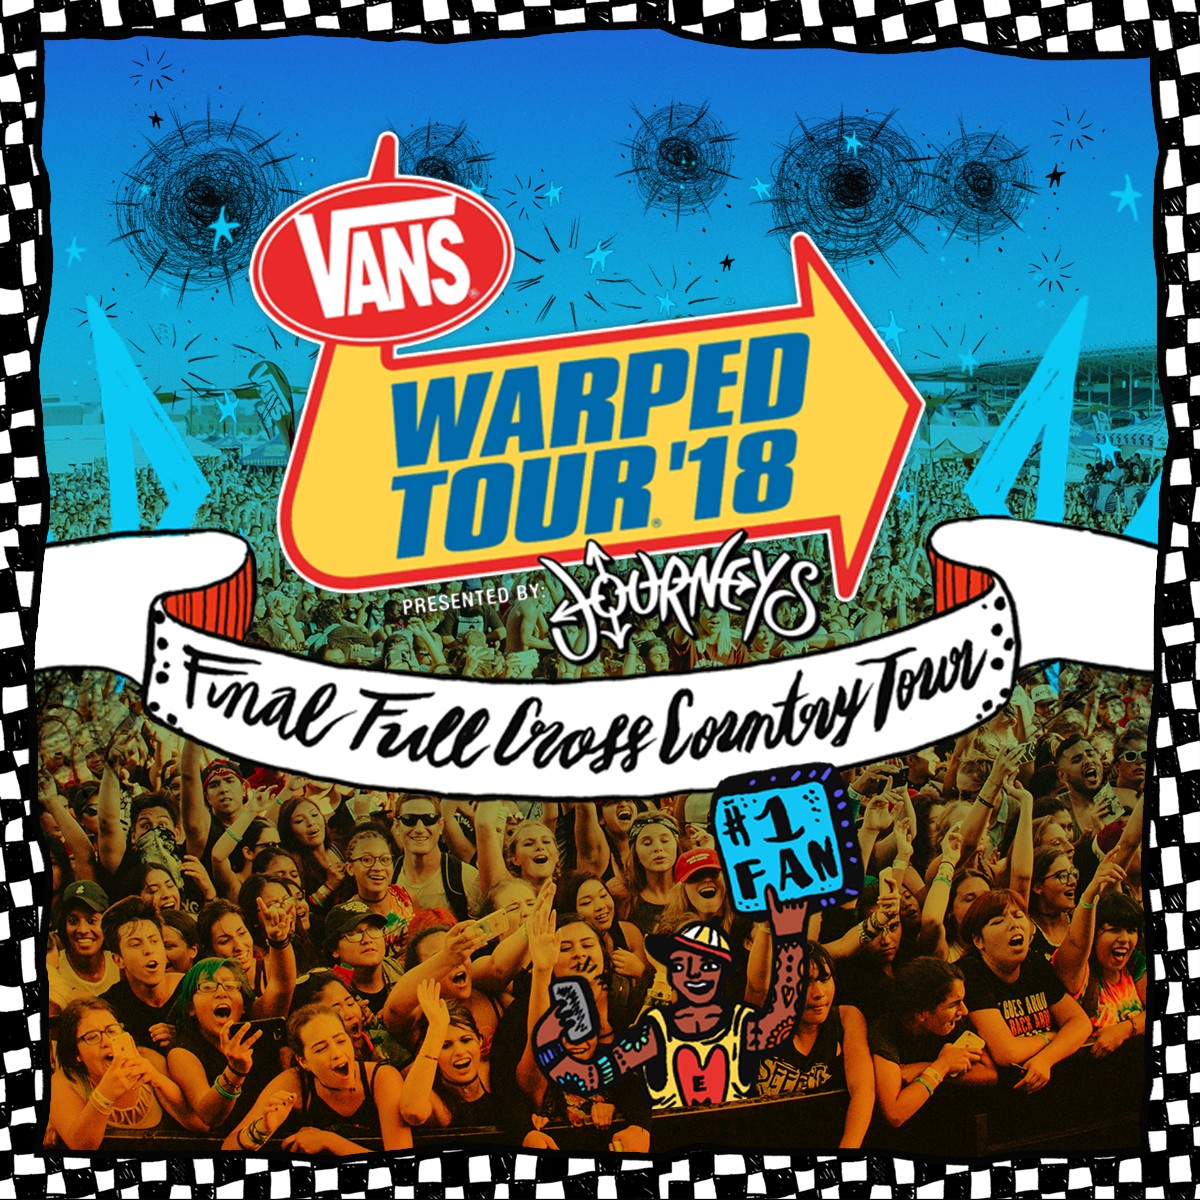 warped tour 2012 cd tracklist